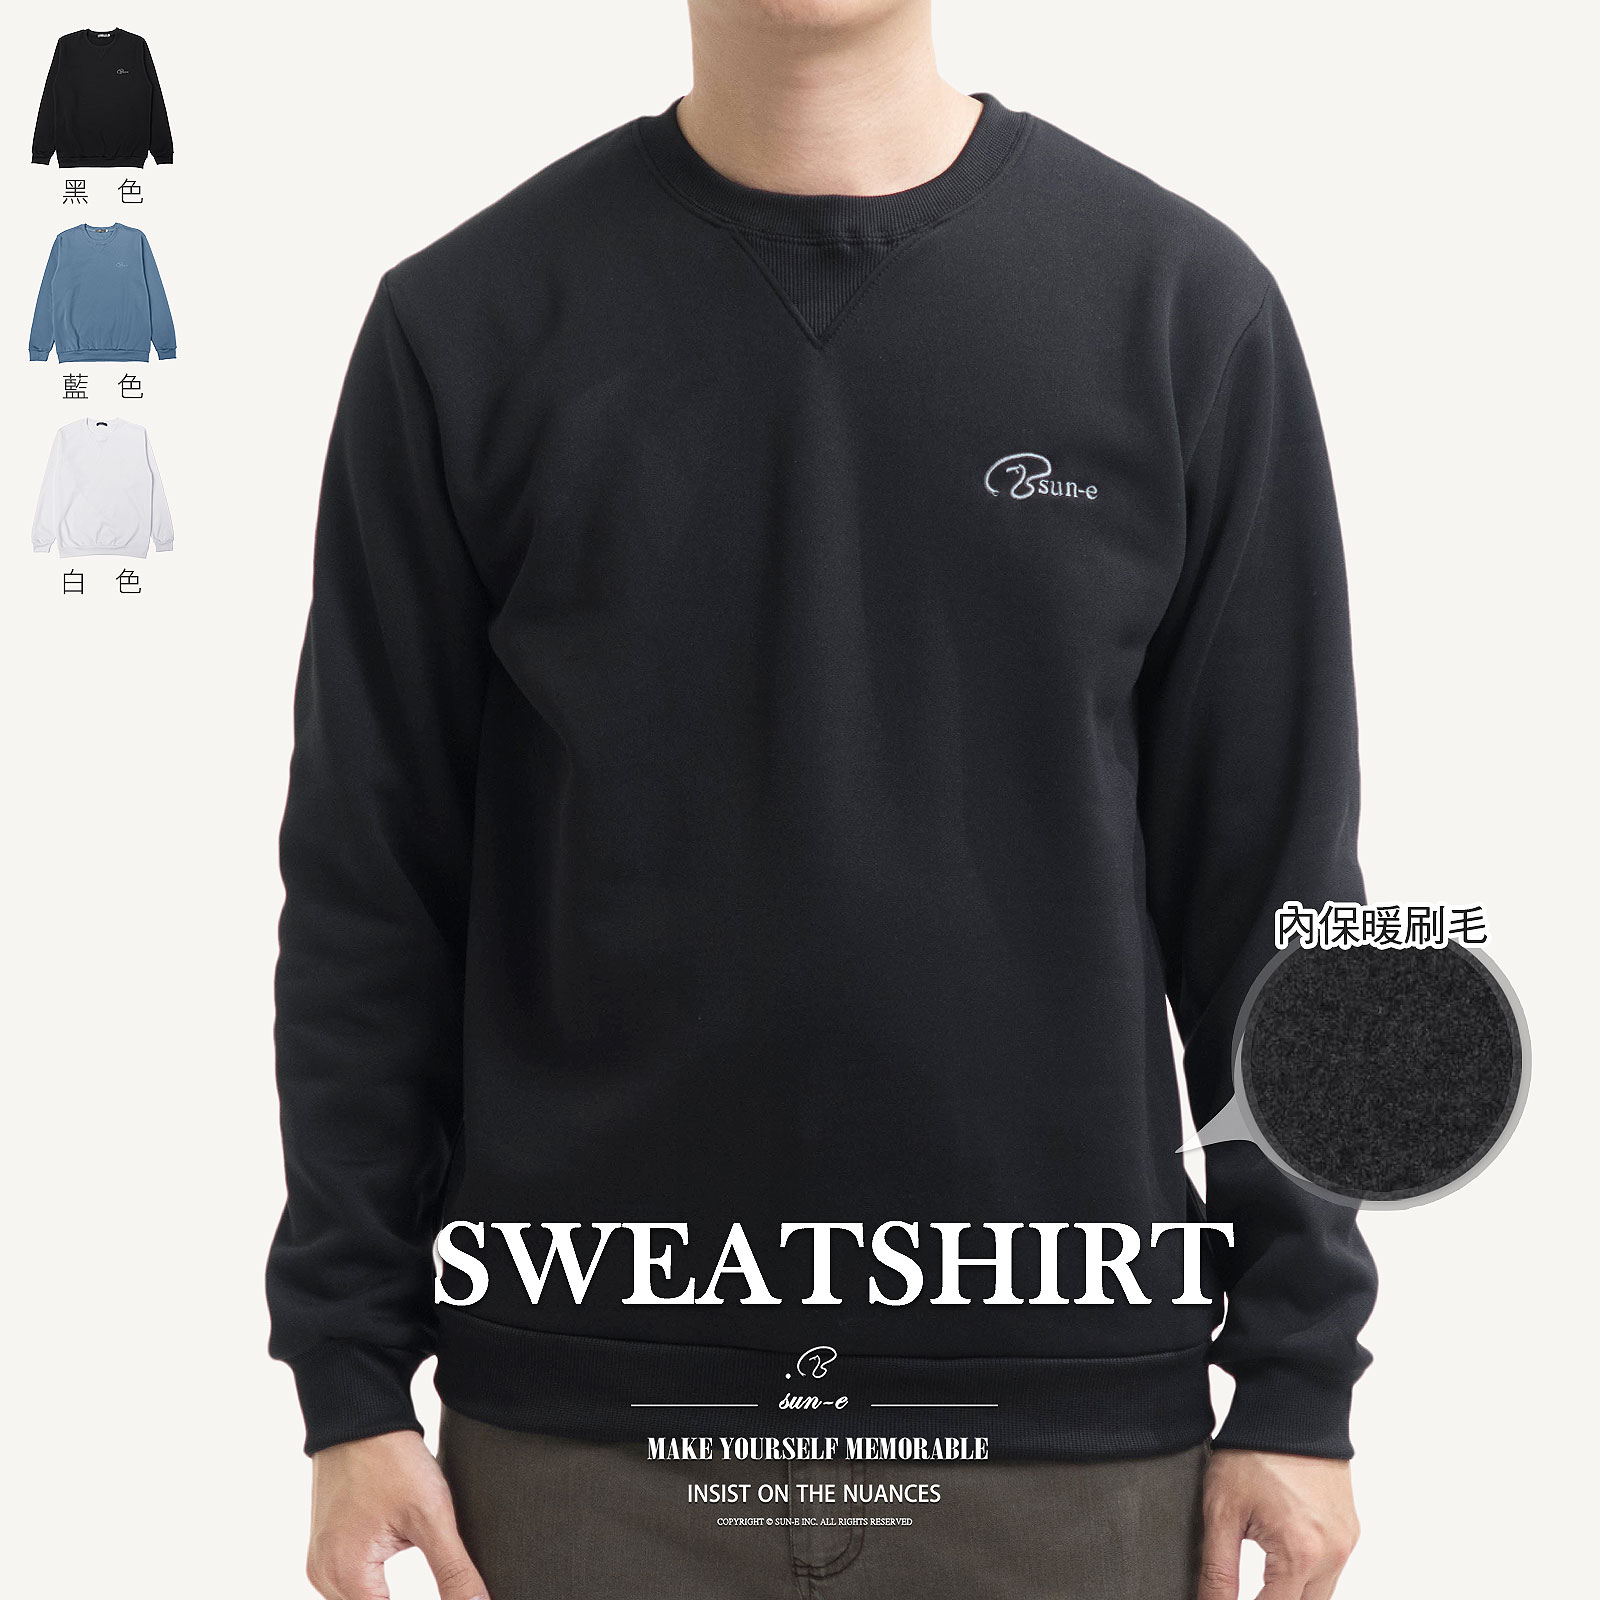 保暖內刷毛大學T 台灣製長袖T恤 圓領T恤 長袖上衣 百搭素面T恤 黑色T恤 螺紋領口袖口下擺長Tee Fleece Lined Sweatshirts Made In Taiwan T-shirts Long Sleeve T-shirts Crew Neck T-Shirts (310-5189-01)白色、(310-5189-09)藍色、(310-5189-21)黑色 L XL (胸圍:44~47英吋 / 112~119公分) 男 [實體店面保障] sun-e